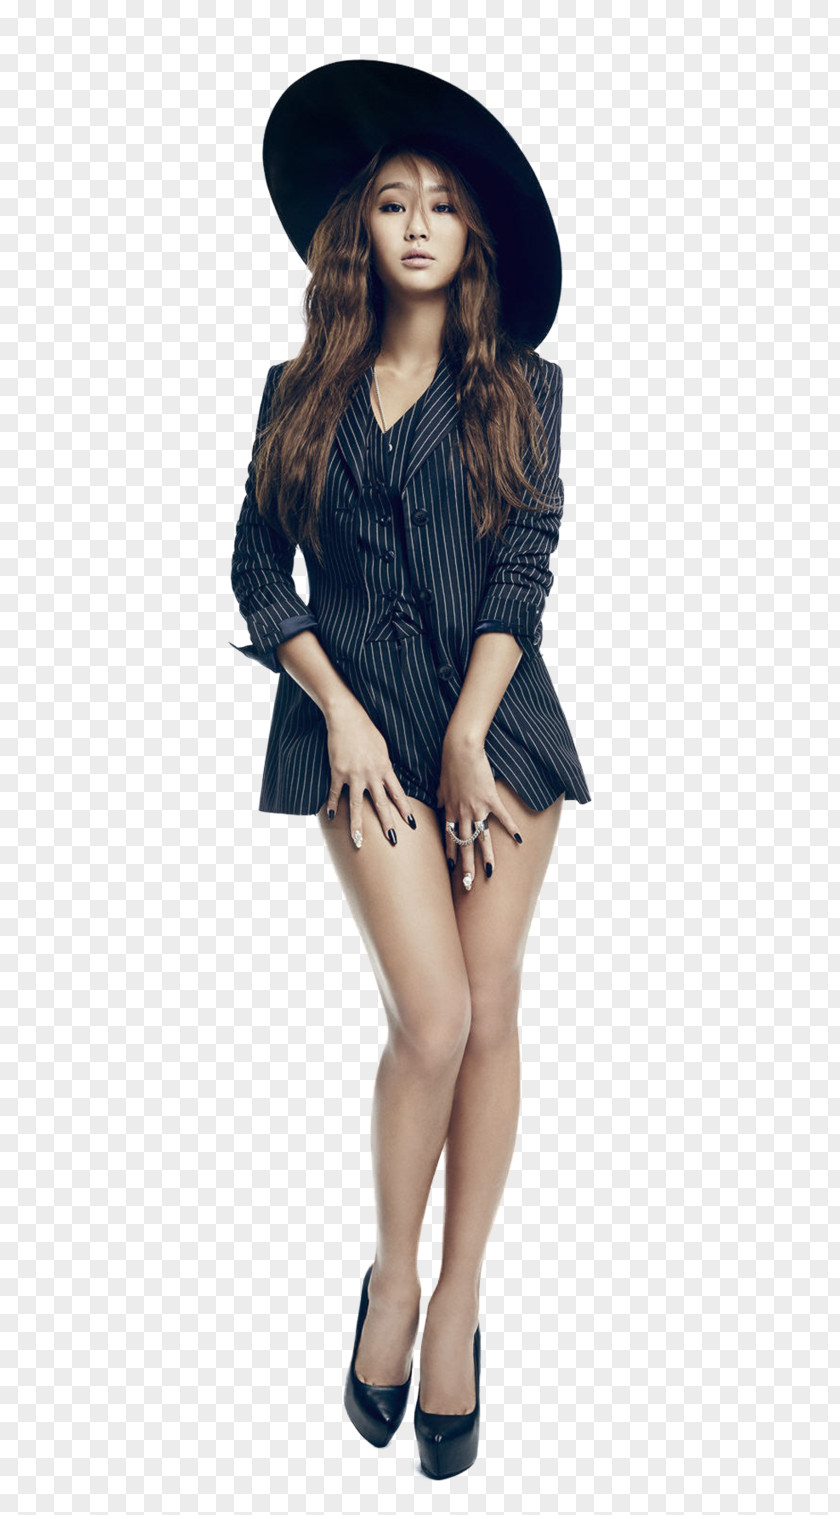 A Roommate Who Wears That Dress Hyolyn Sistar Female K-pop Artist PNG